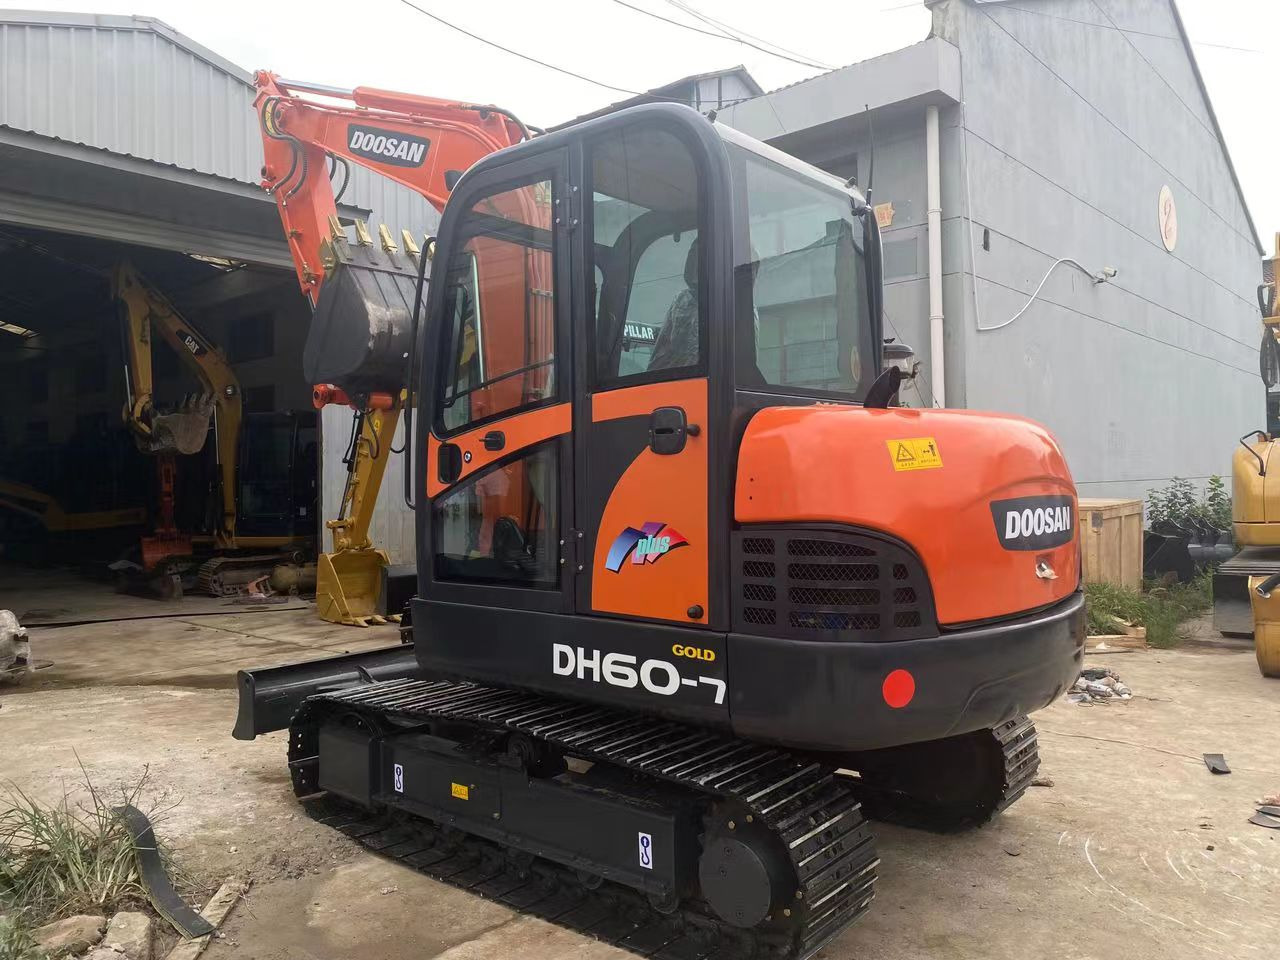 크롤러 굴삭기 Good condition DOOSAN used excavator DH60-7models aslo on sale welcome to inquire : 사진 2